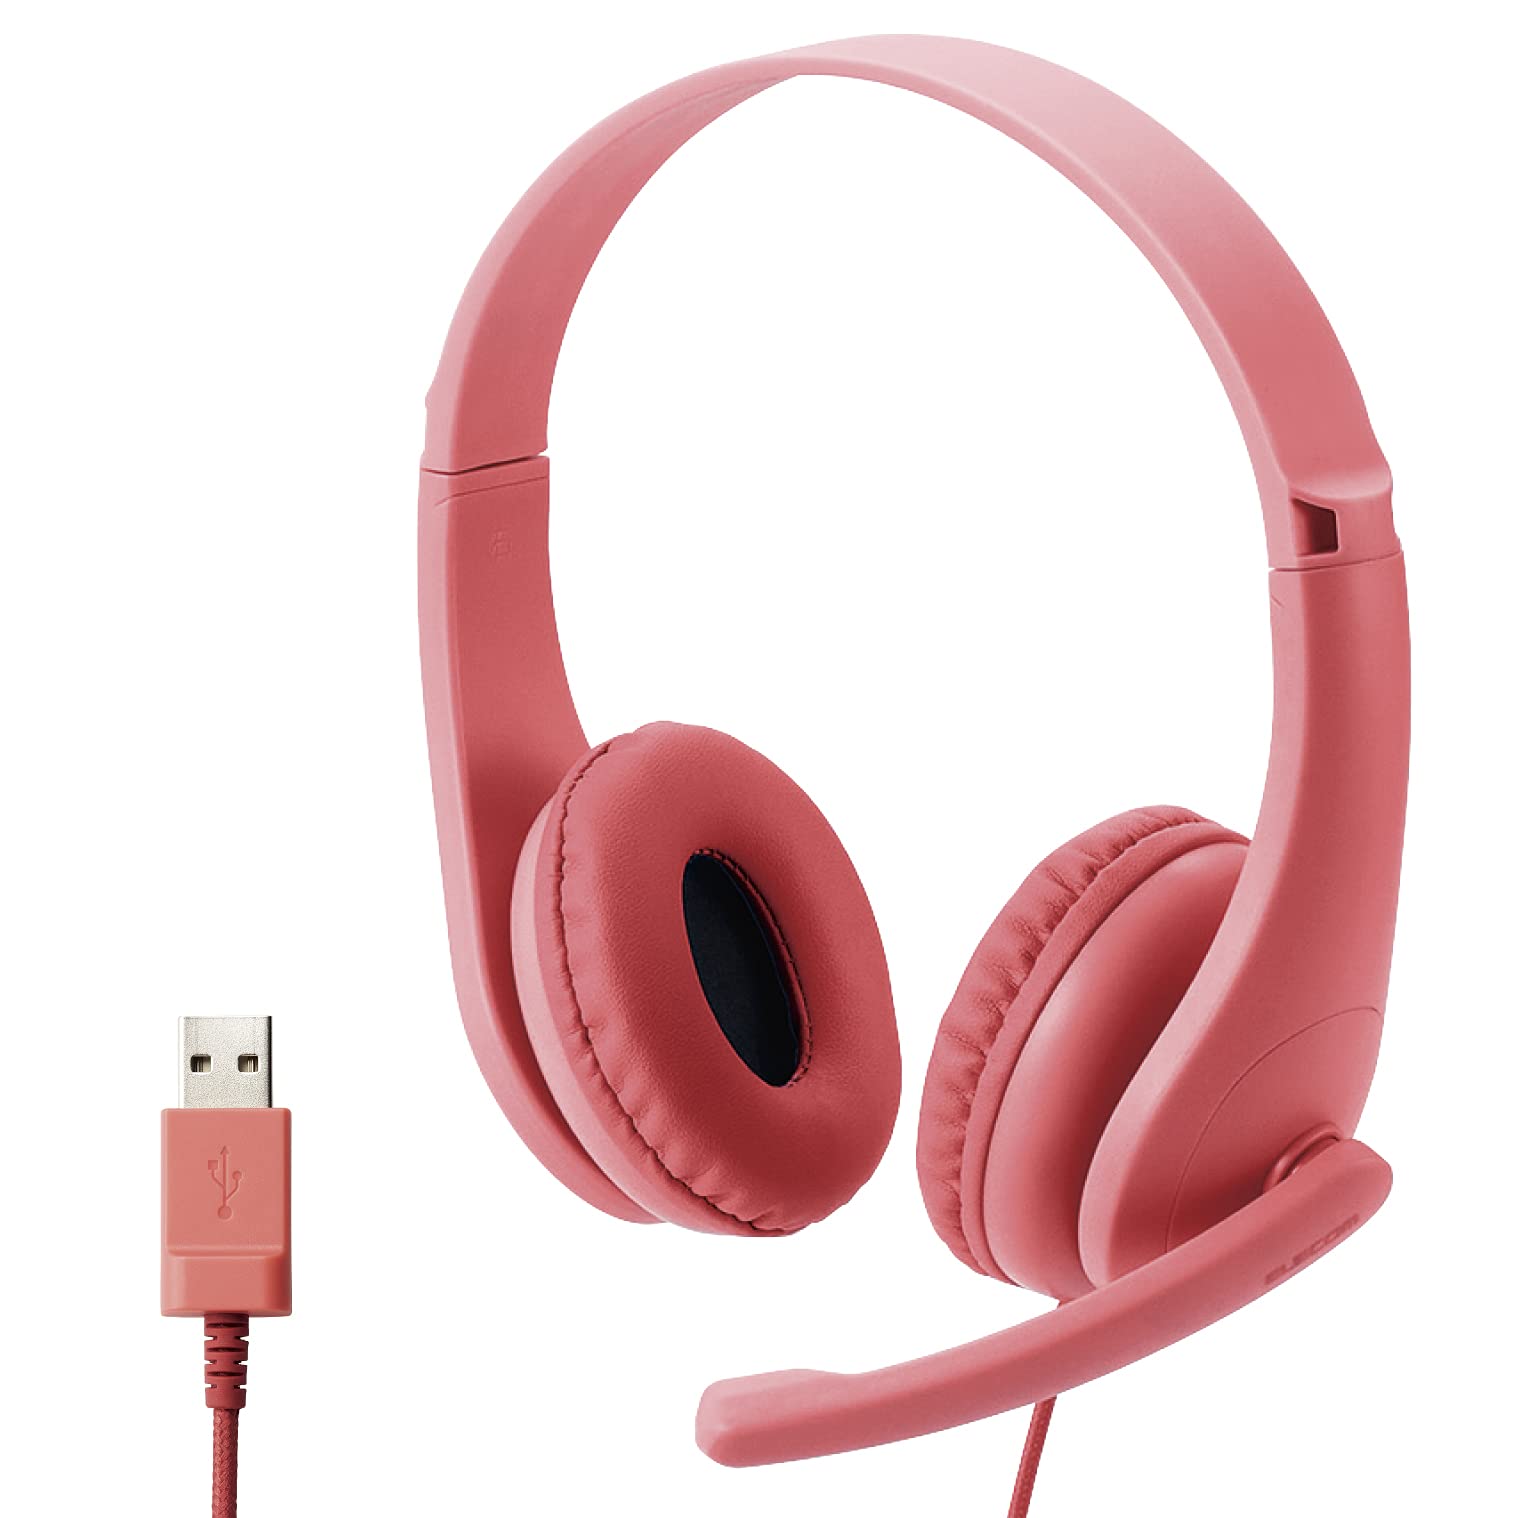 エレコム ヘッドセット 子供用 マイク付き USB接続 子どもの耳に配慮した出力音圧レベル レッド HS-KD01URD 幅121×奥行43×高さ122mm(ケーブル含まず)